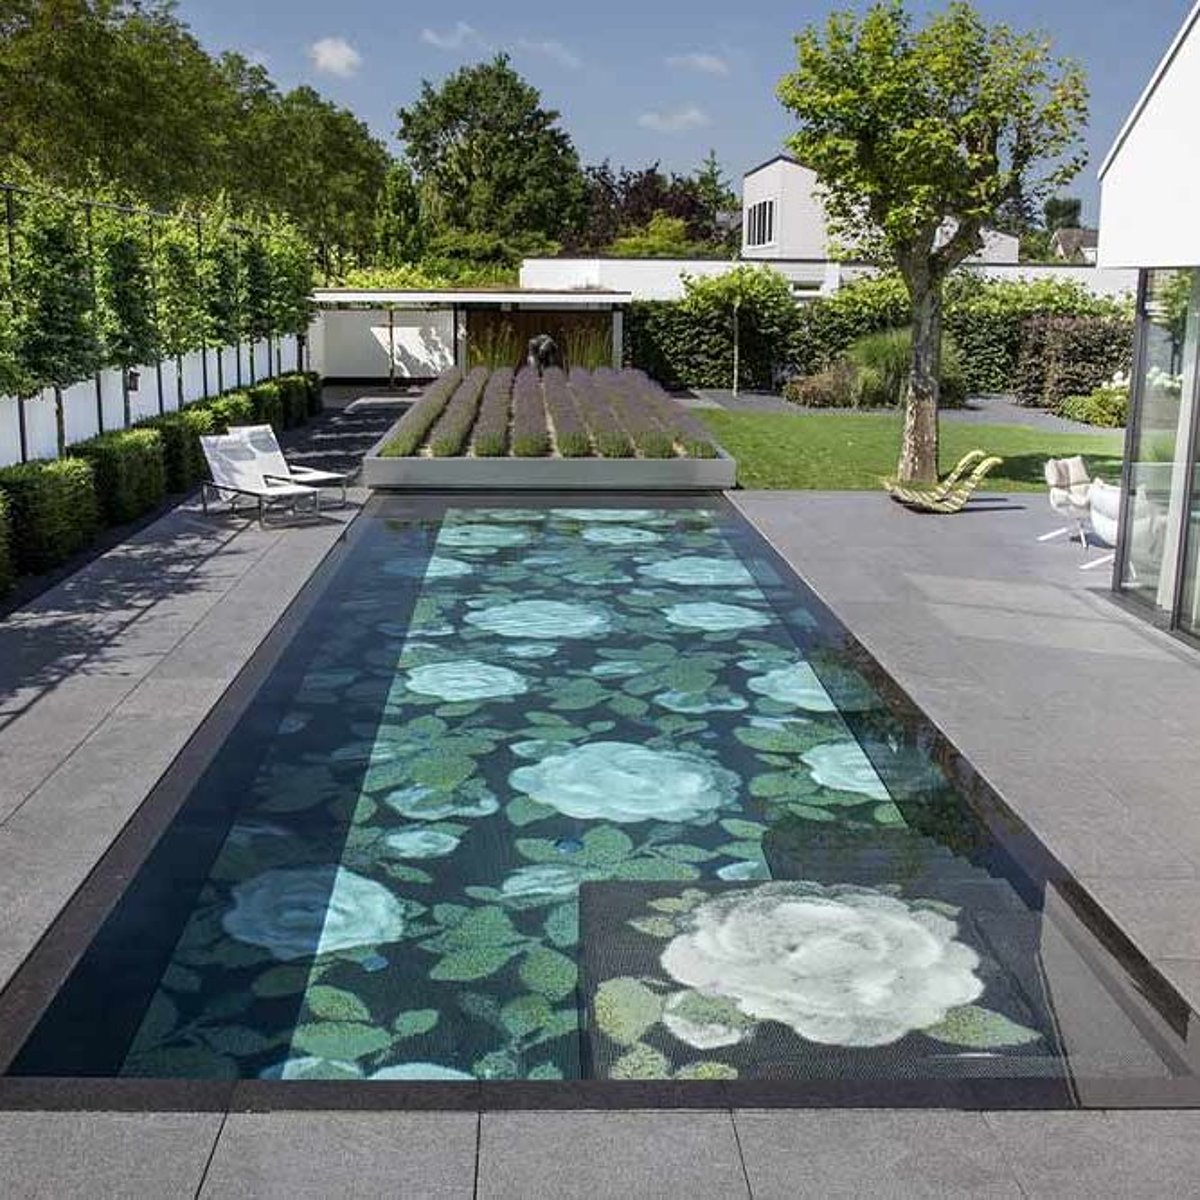 Een uitgebreid ontworpen patiozwembad met bloemenmozaïek en mobiel begroeid dek als afdekking.